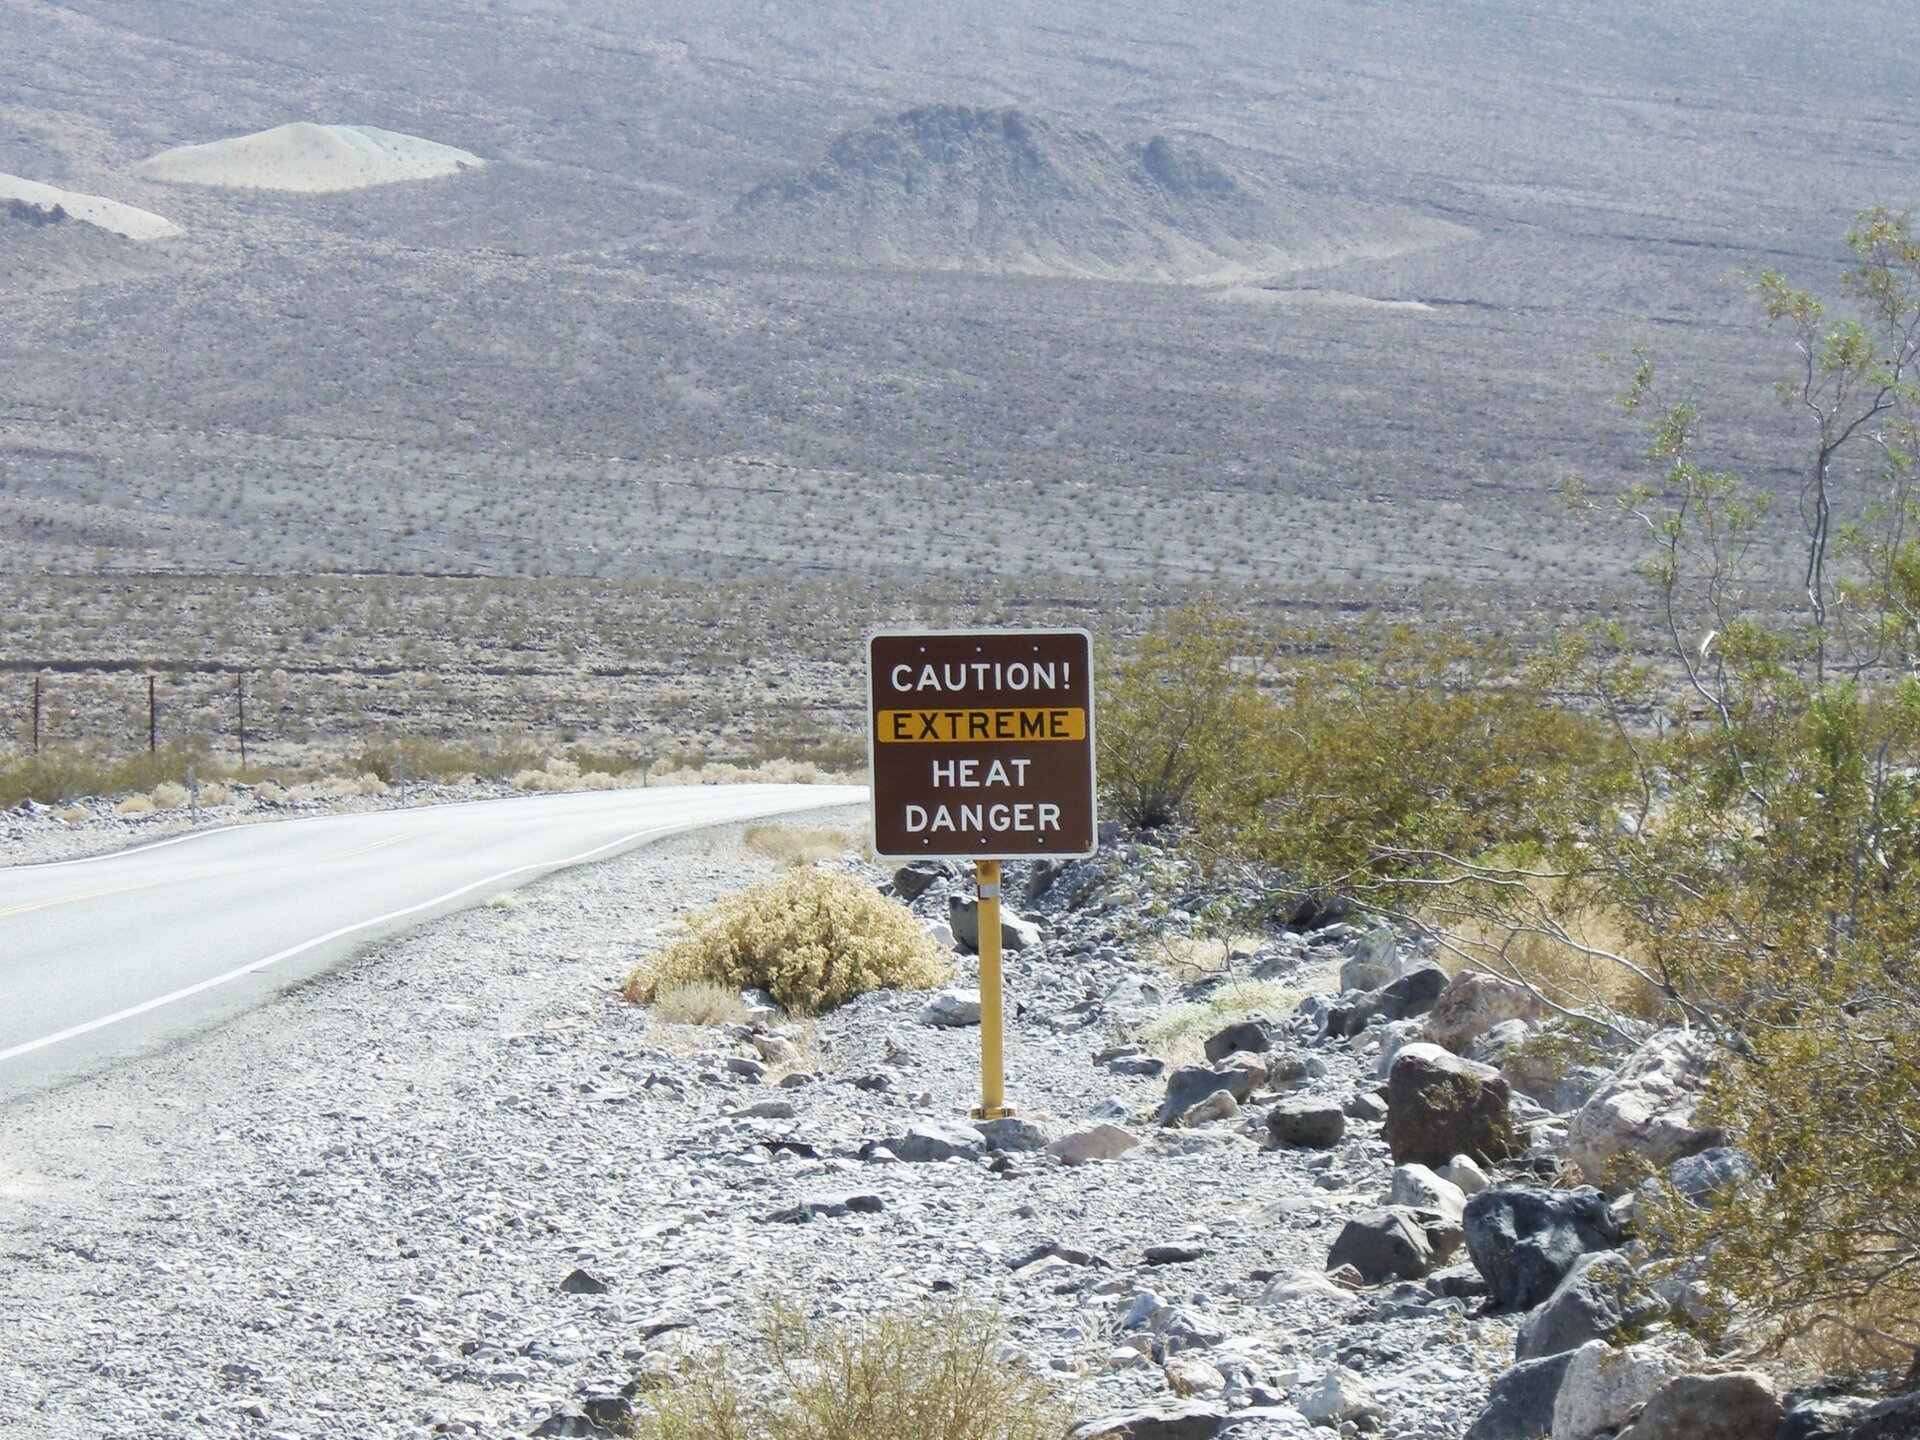 Fotografia przedstawia tablicę informująca o zagrożeniu nadzwyczaj wysoką temperaturą powietrza. Tablica jest prostokątna, brązowa, z białymi i zaznaczonymi na żółto napisami w języku angielskim. Stoi na skraju Doliny Śmierci na pustyni Mojave. Przy żółtym słupie tablicy leżą szare i brązowe kamienie, między którymi rosną kępy roślin – traw i niskich krzewów. W tle łańcuchy górskie.